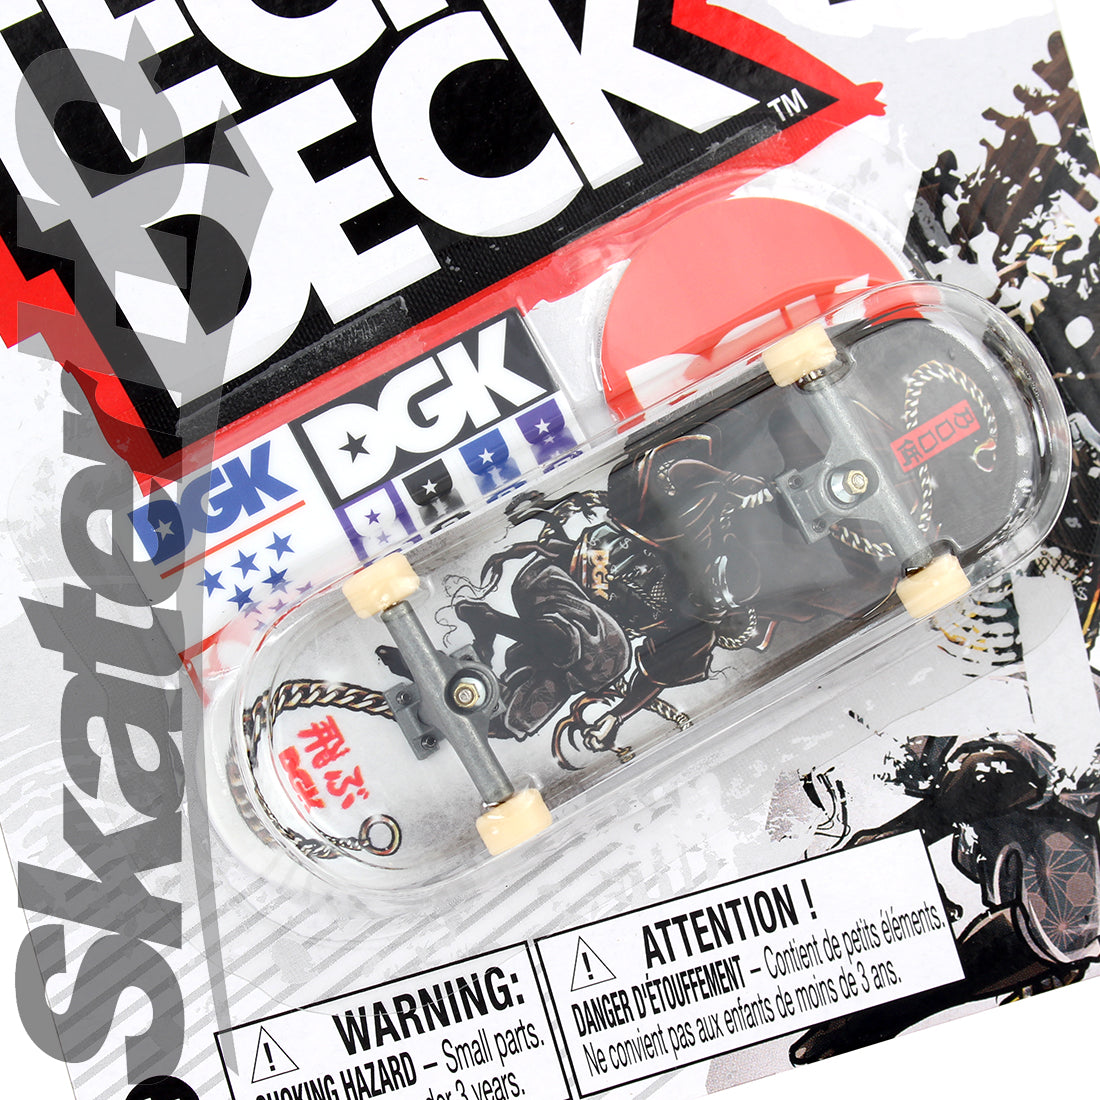 Tech Deck 2022 Series - DGK - Boo Ninja Skateboard Accessories